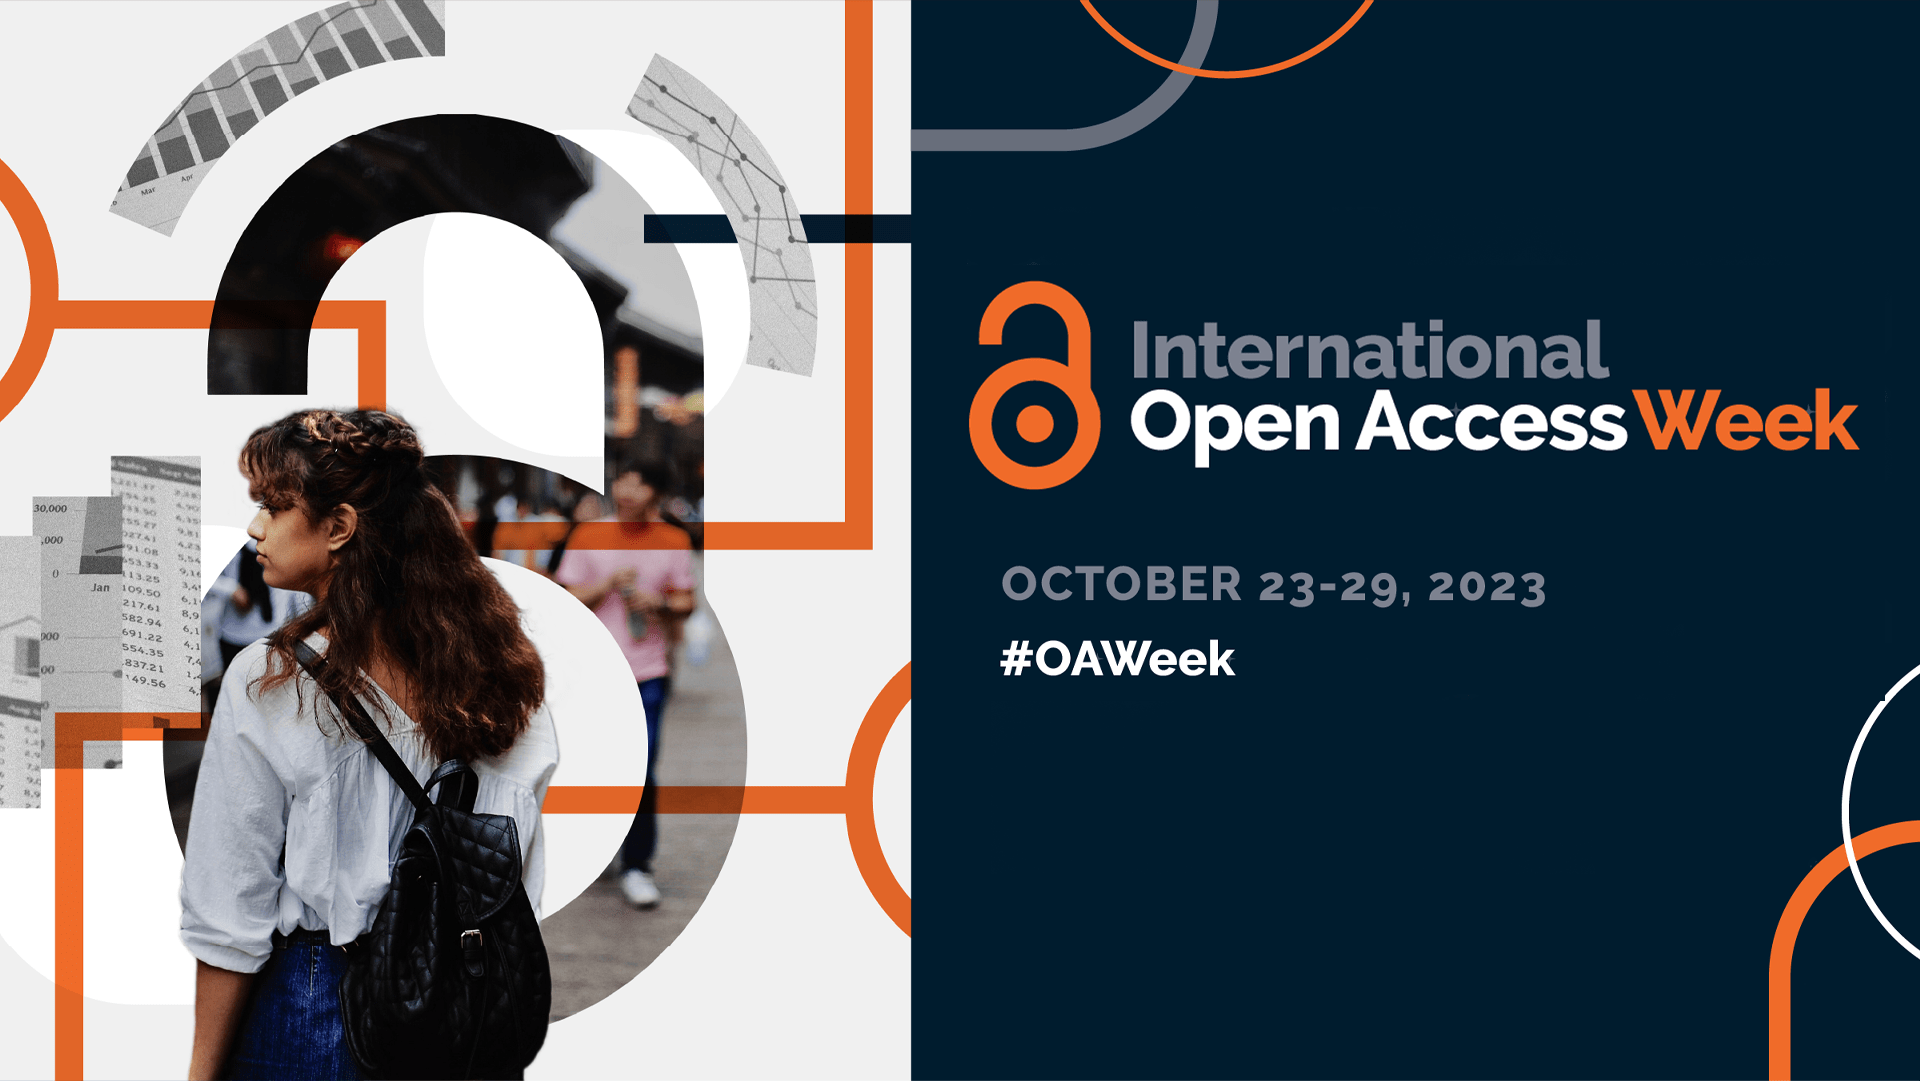 International Open Access Week, October 23-29, 2023 #OAWeek